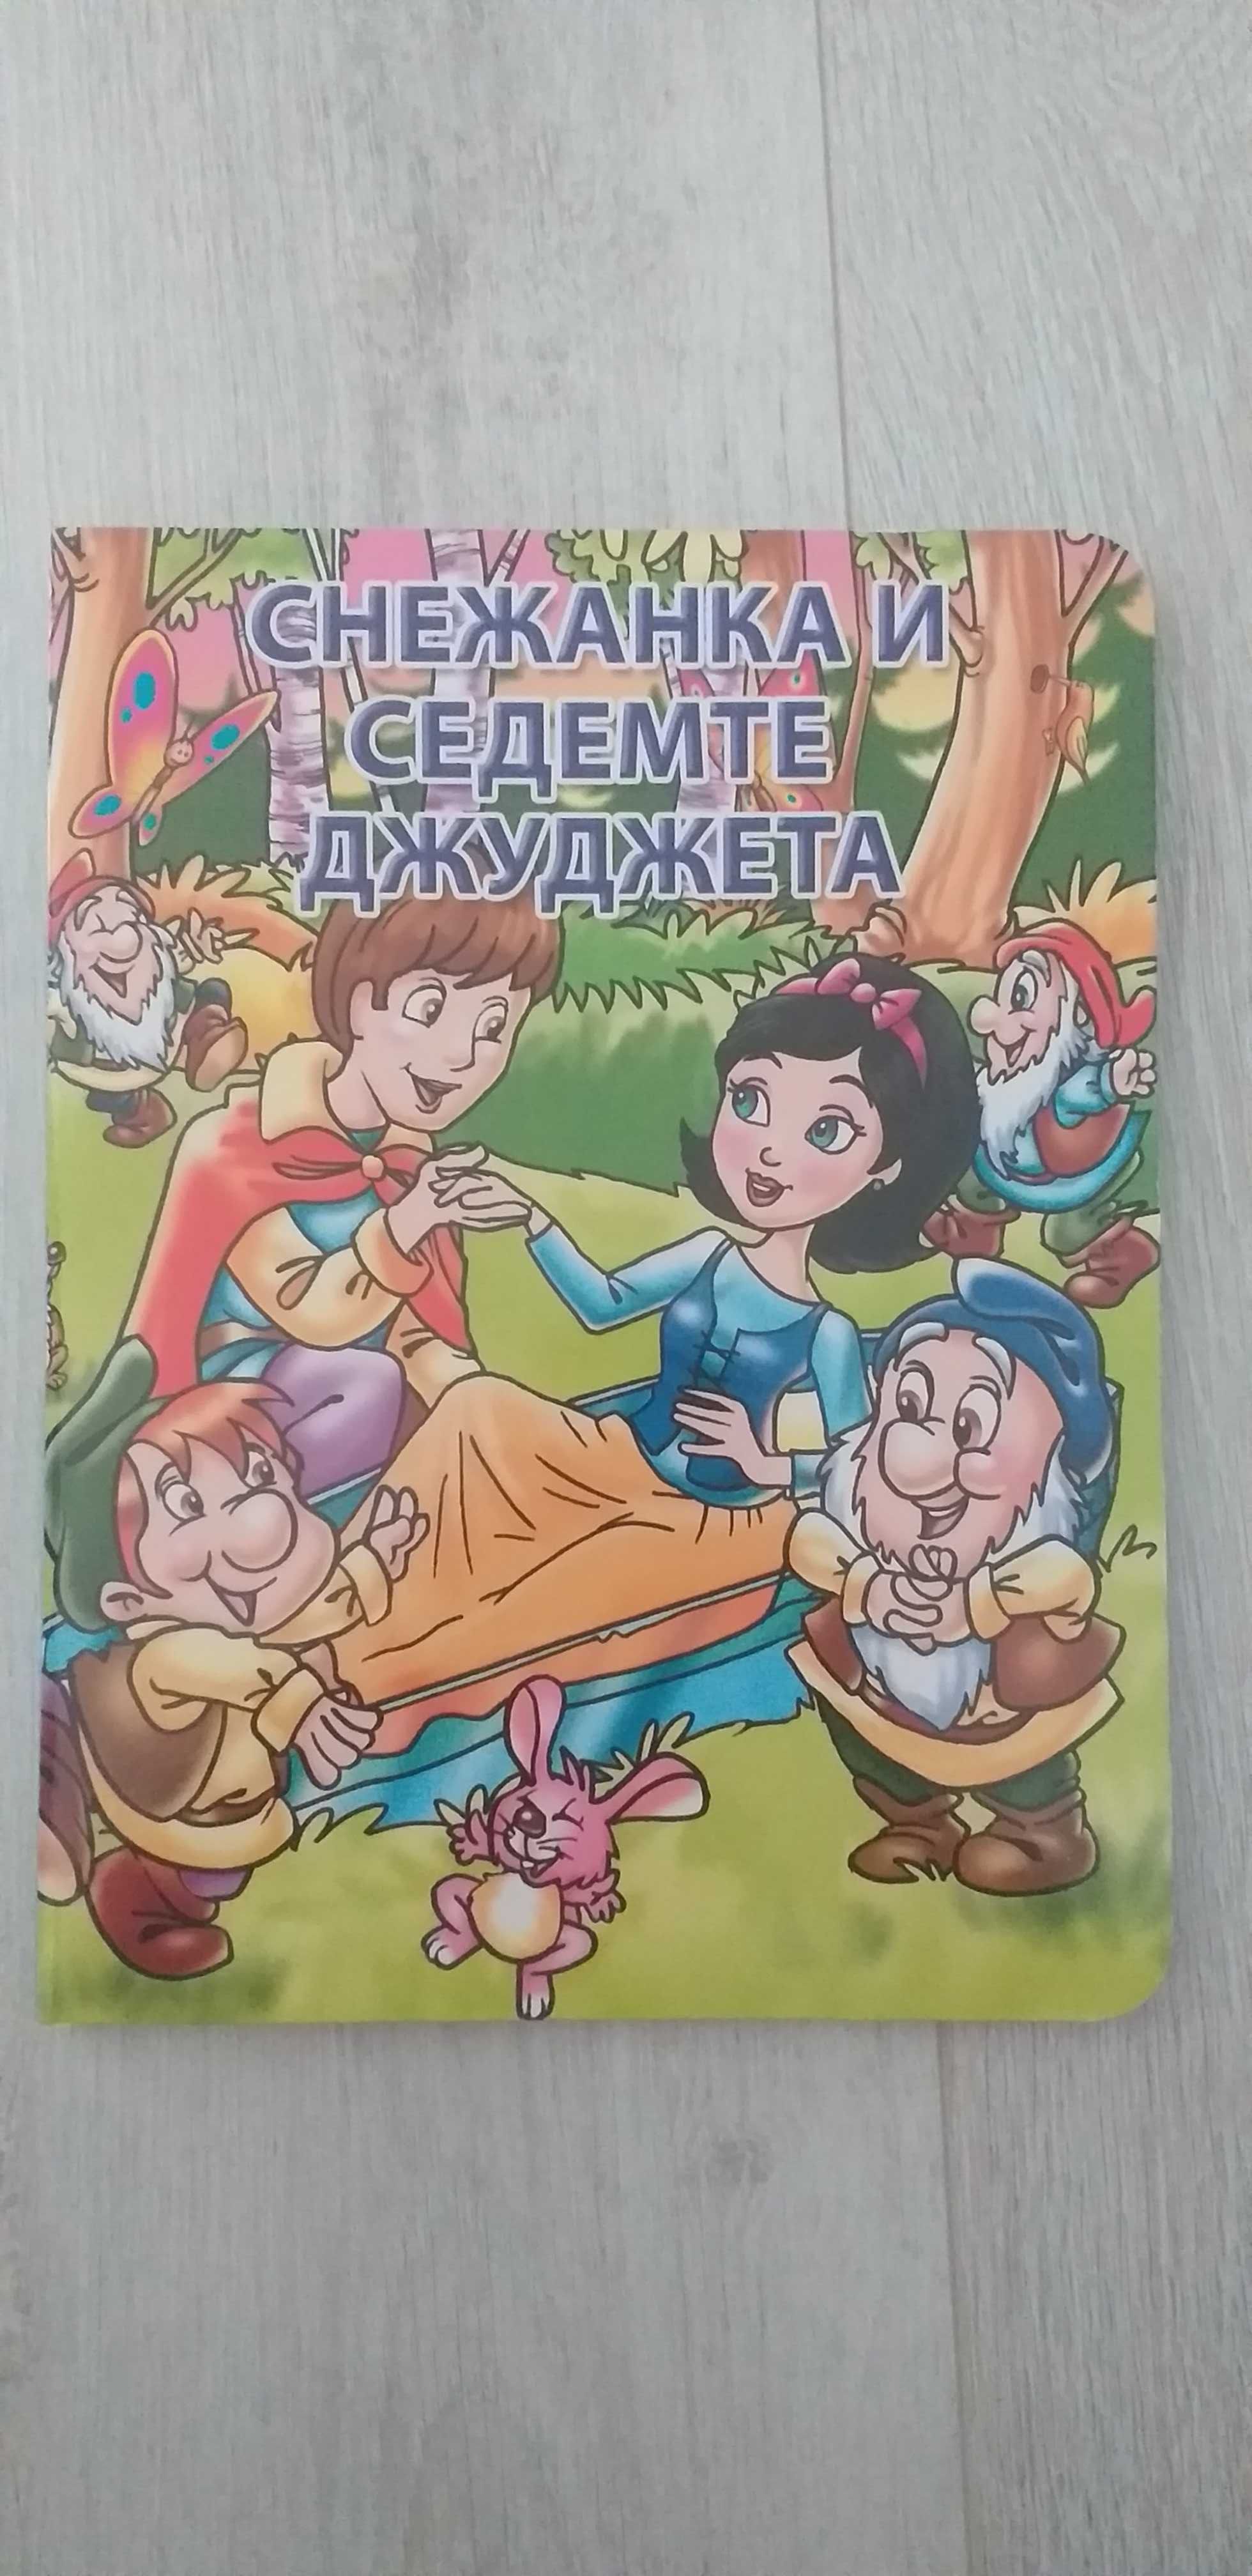 Детски музикални книжки нови и други играчки 25-35лв.